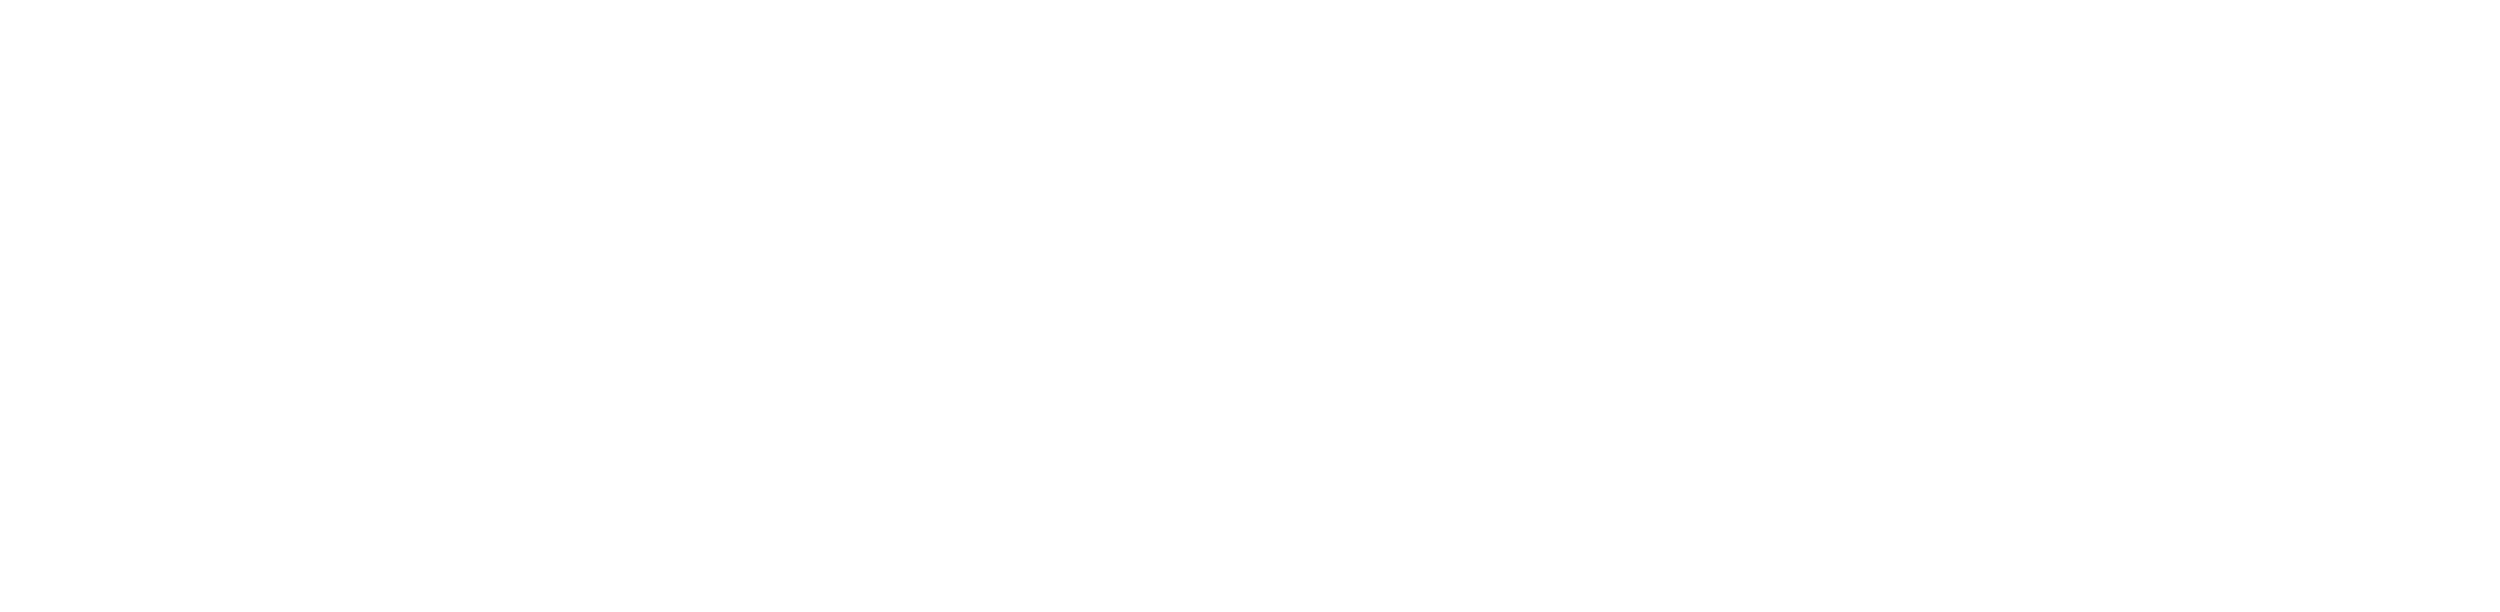 The-Sanctuary-logo-white